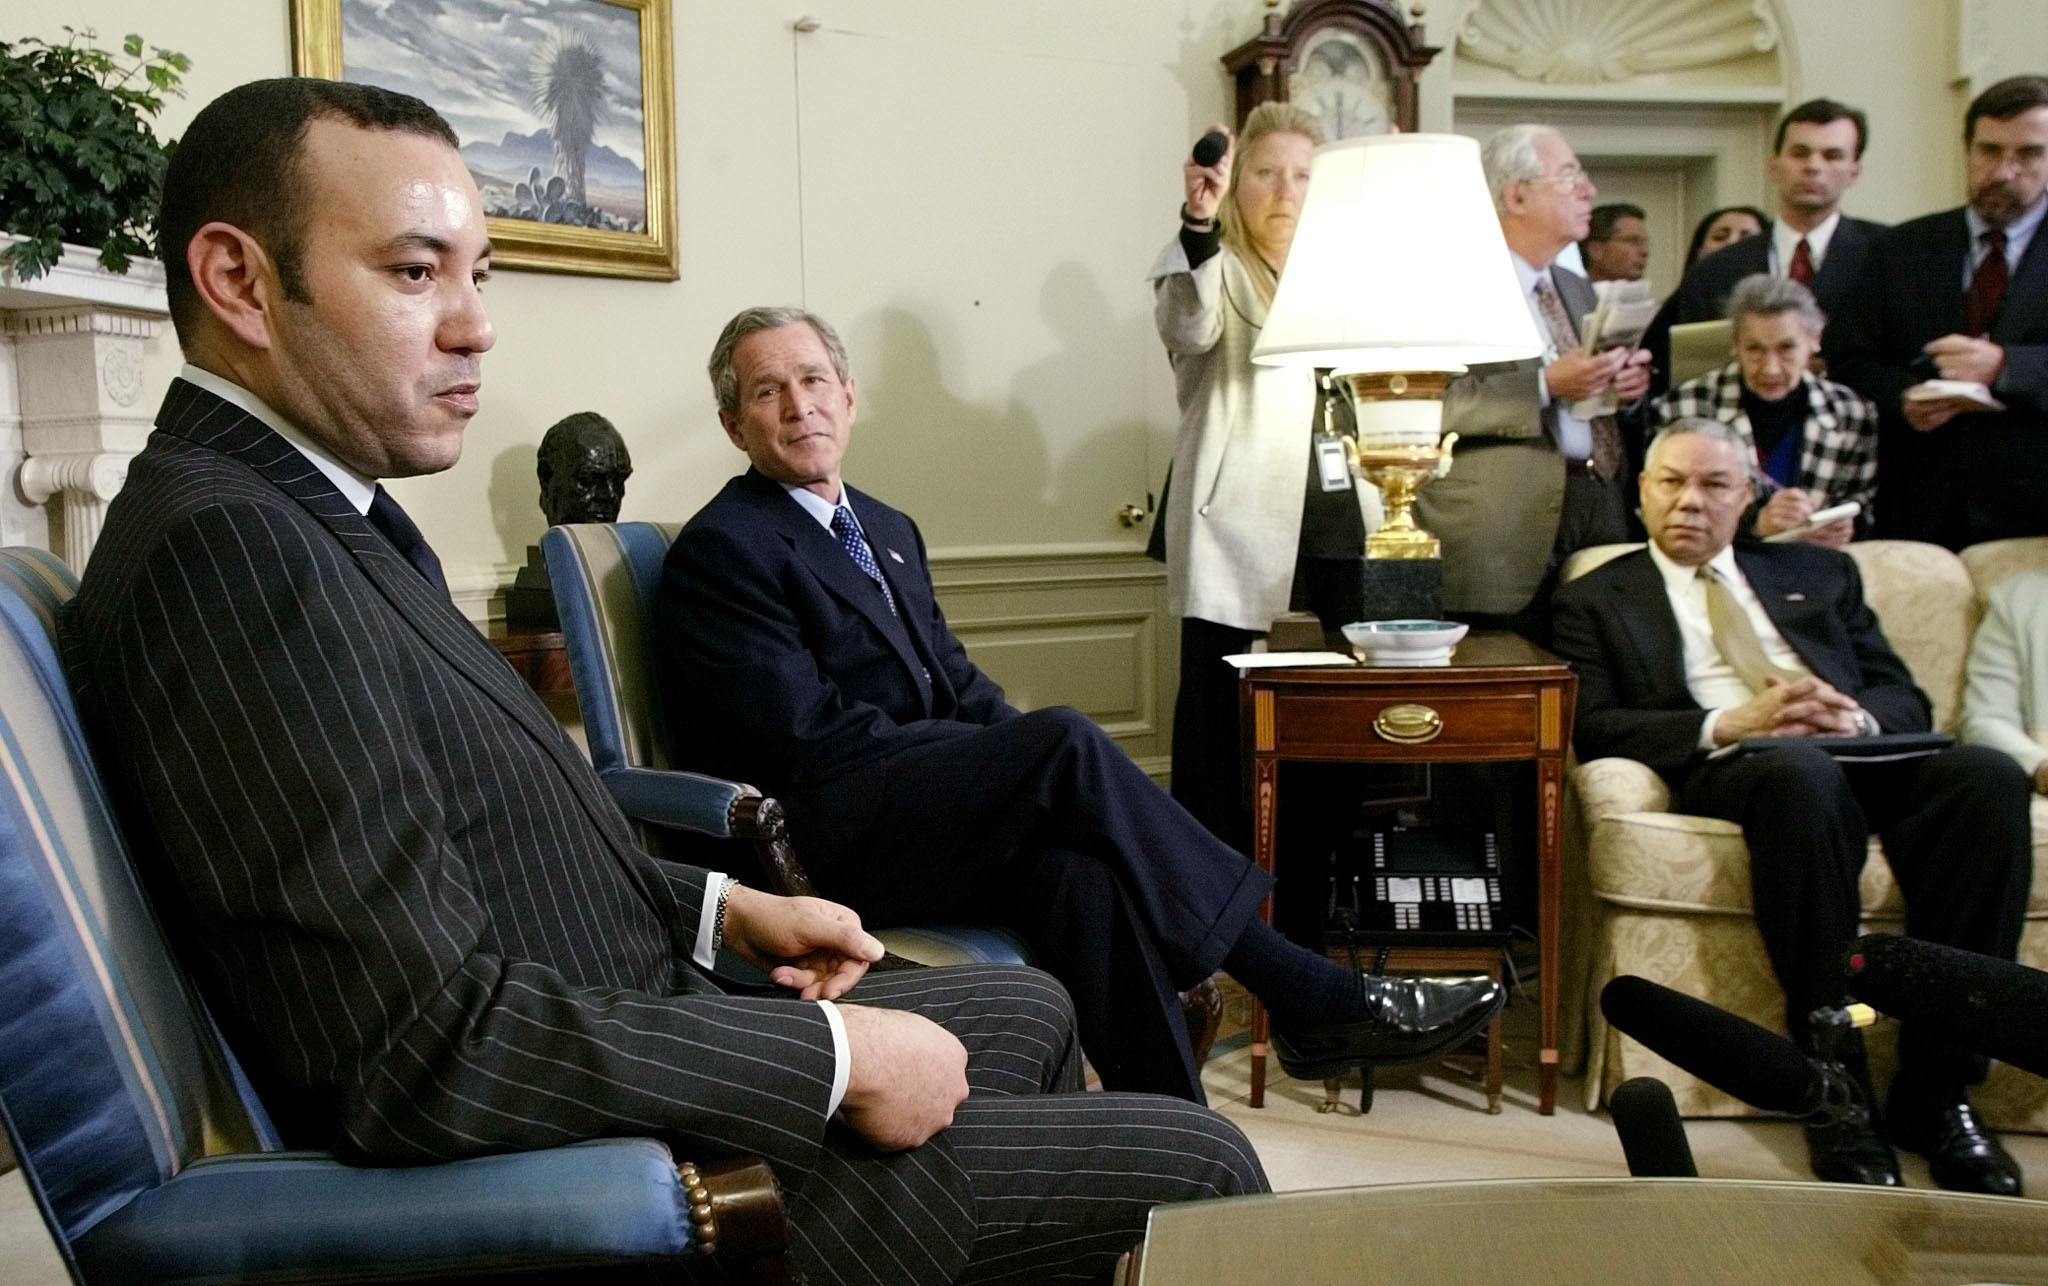 Mohamed VI junto a George W. Bush y el secretario de estado Colin Powell, en 2002.